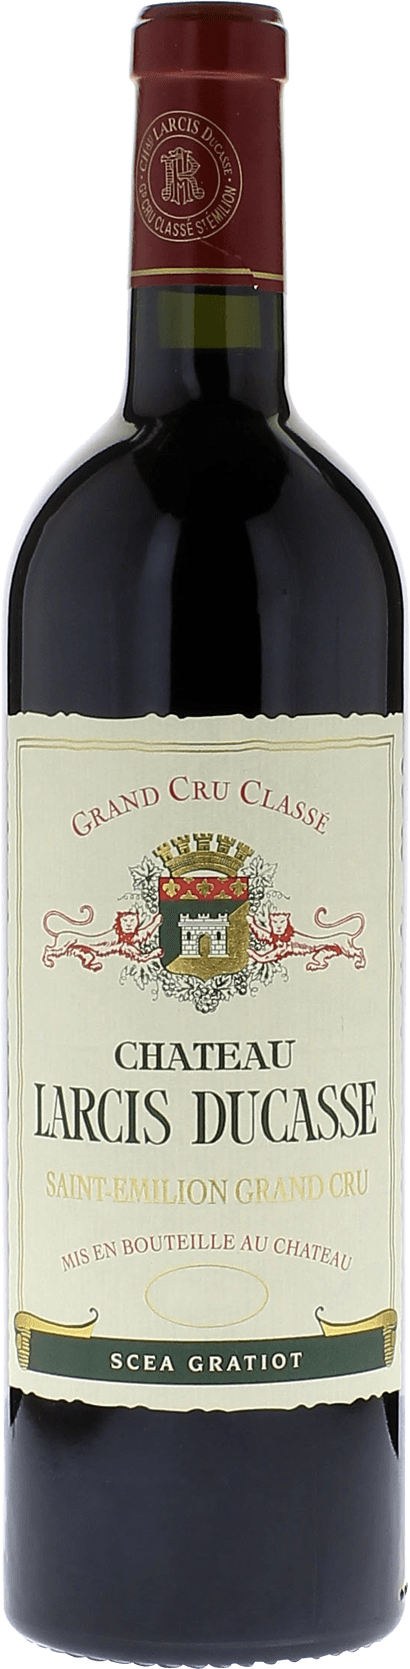 Larcis ducasse 2018 Grand cru class Saint-Emilion, Bordeaux rouge